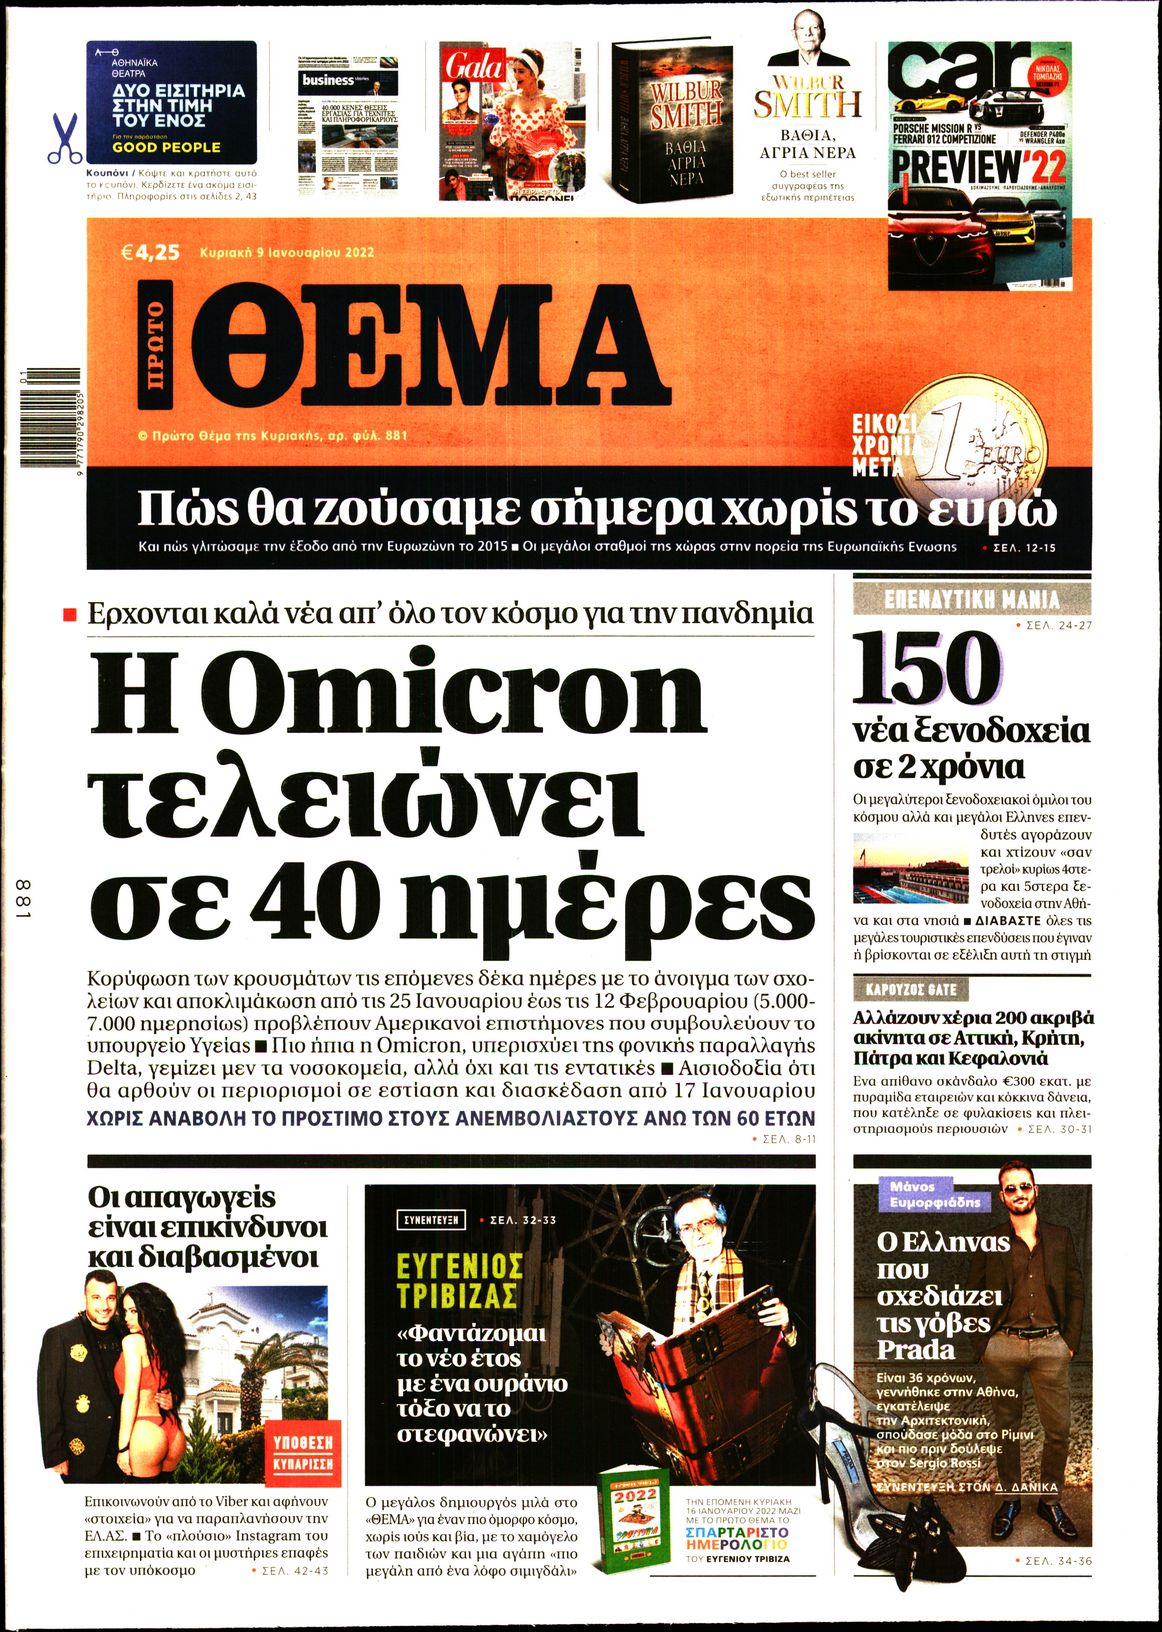 Εξώφυλο εφημερίδας ΠΡΩΤΟ ΘΕΜΑ 2022-01-09